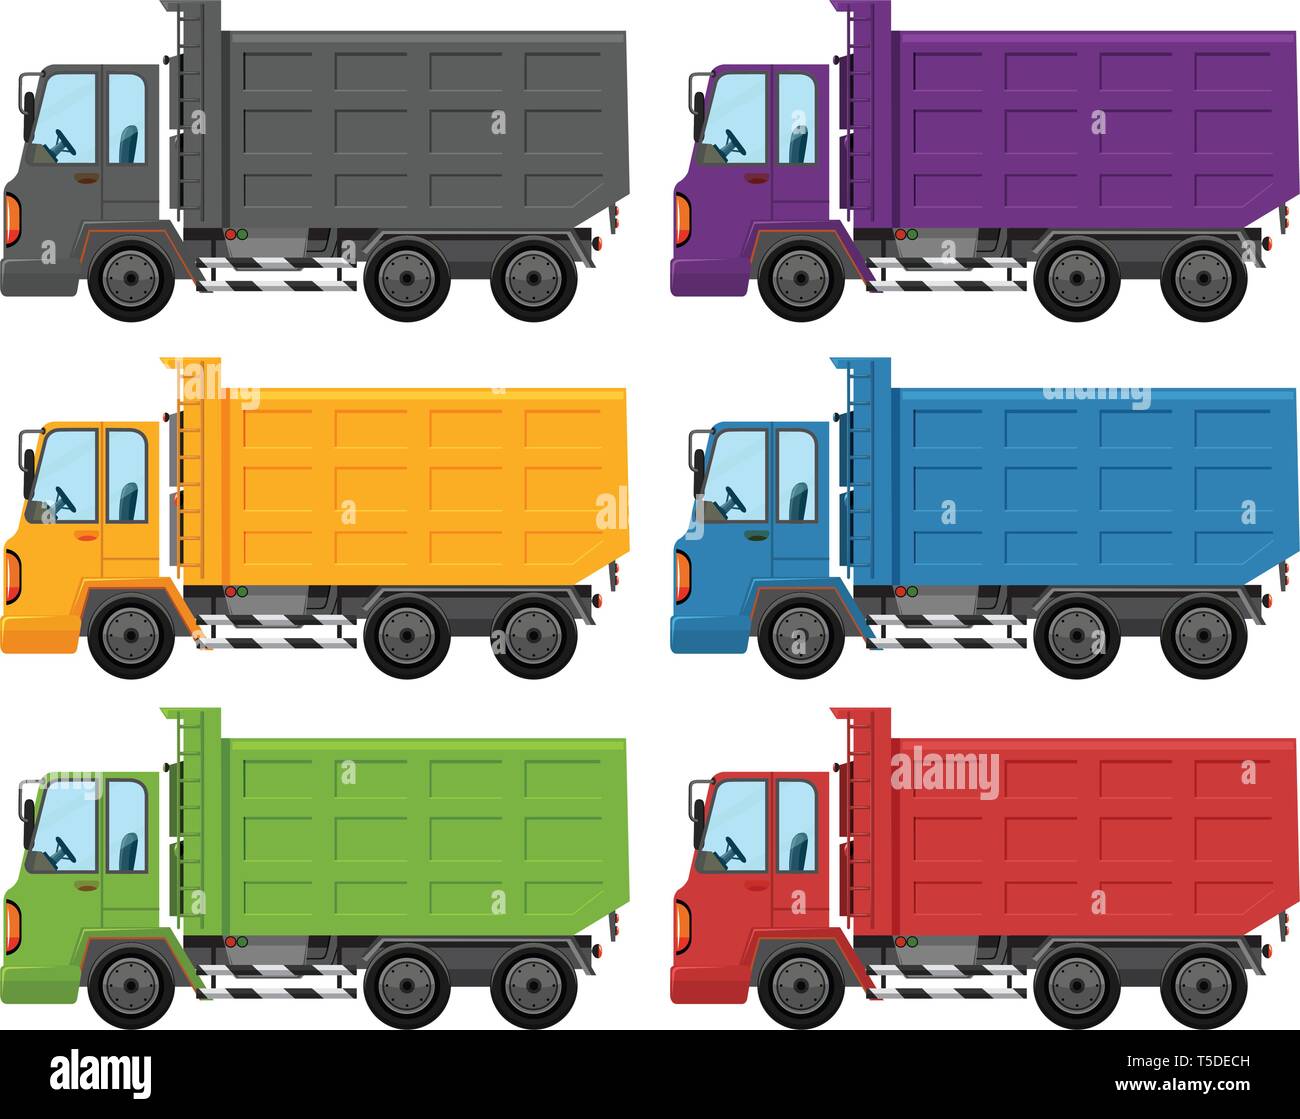 Включи машина грузовик. Мультяшный грузовик. Грузовая машина цветная. Грузовые машины разных цветов. Грузовики разных цветов для детей.